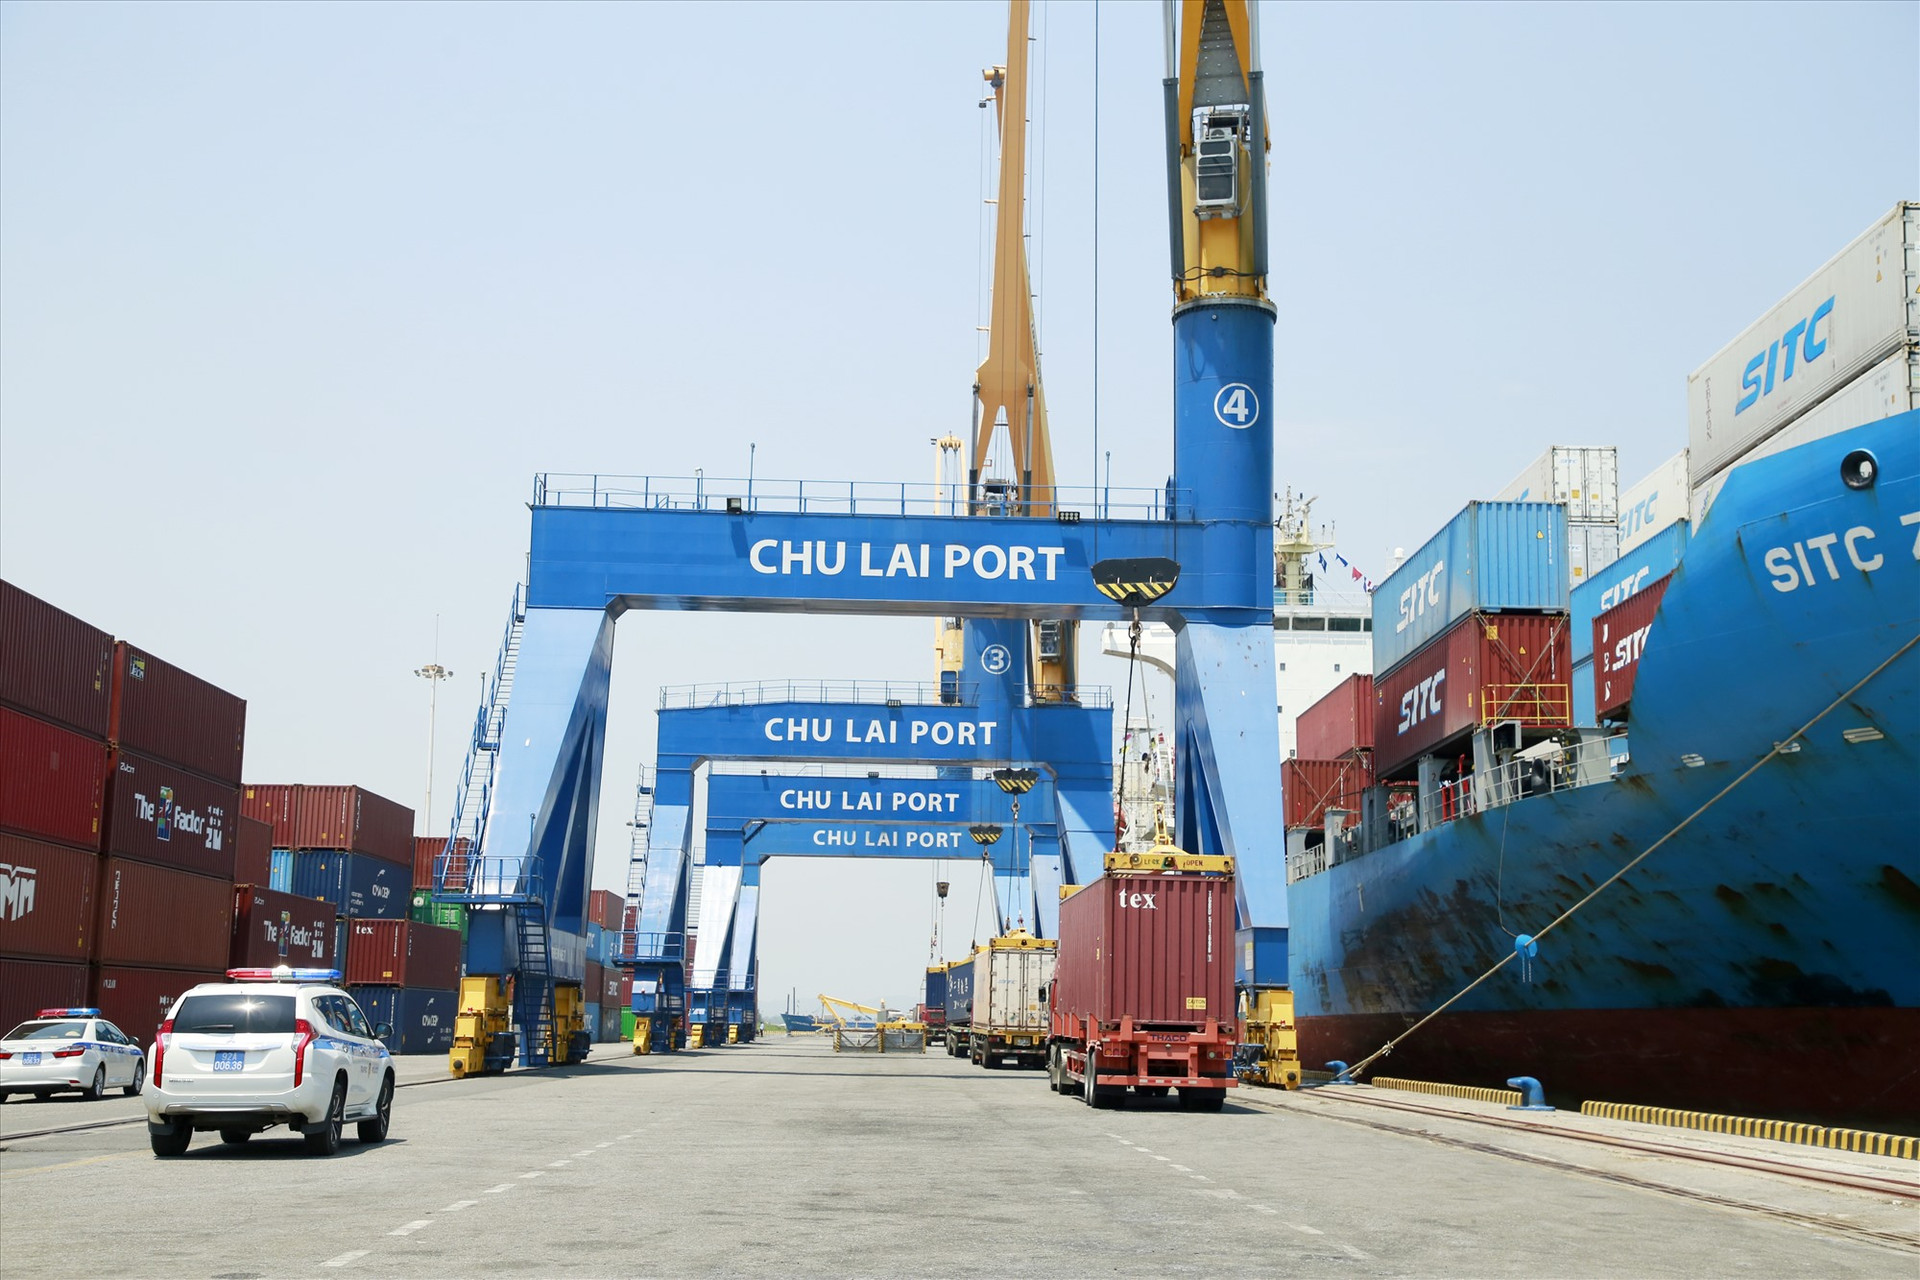 Mở rộng, nâng cấp cảng biển Chu Lai sẽ giải quyết nhiều bất cập liên quan chi phí logictics, tạo đối trọng về xuất nhập khẩu cho khu vực miền Trung - Tây Nguyên. Ảnh: T.C